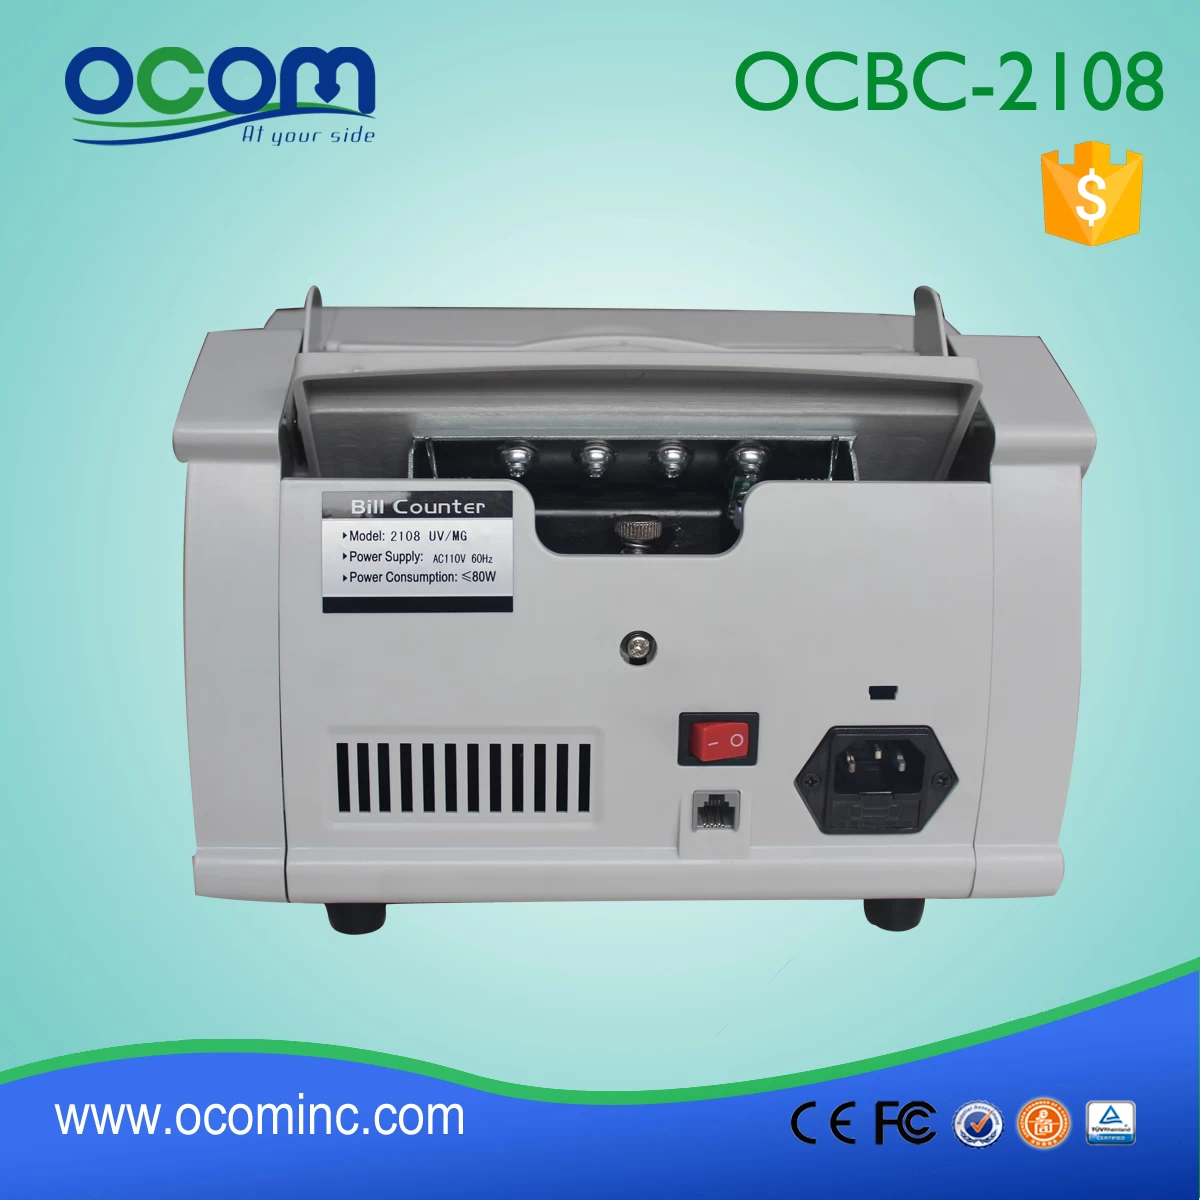 Money (Bill) Counter Machine OCBC-2108